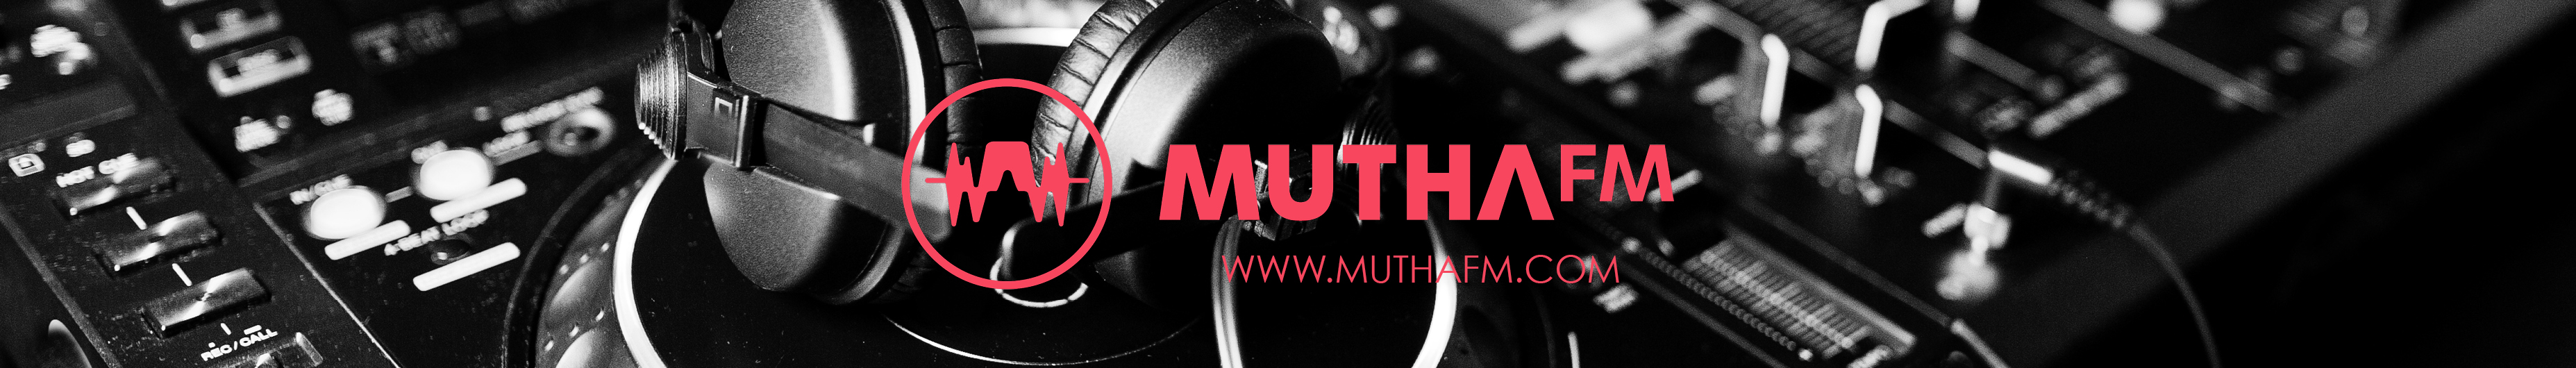 Mutha FM Listen Online